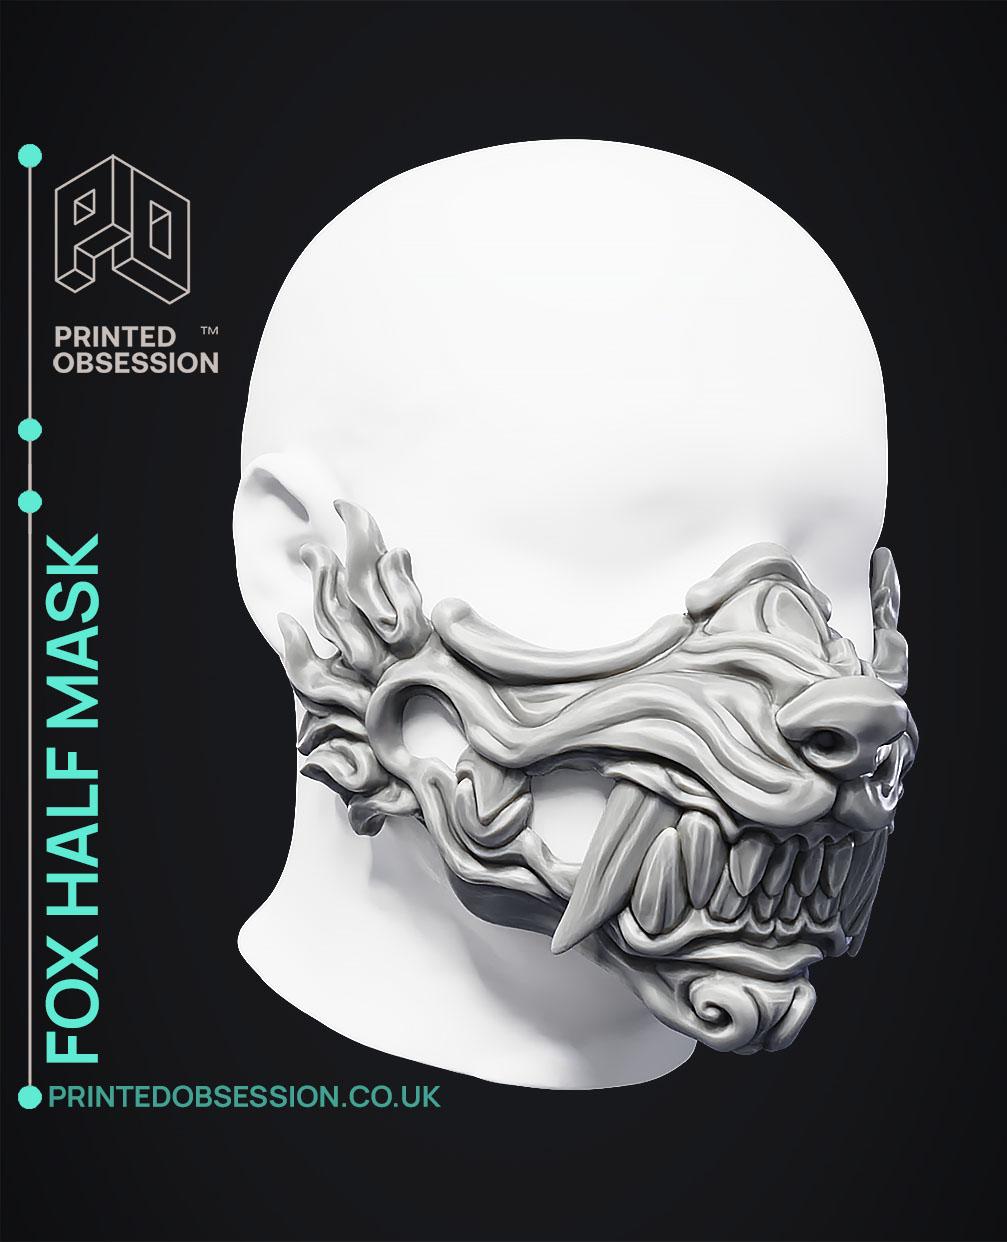 Freddy Fazbear - FNAF - Fan Art - 3D model by printedobsession on Thangs